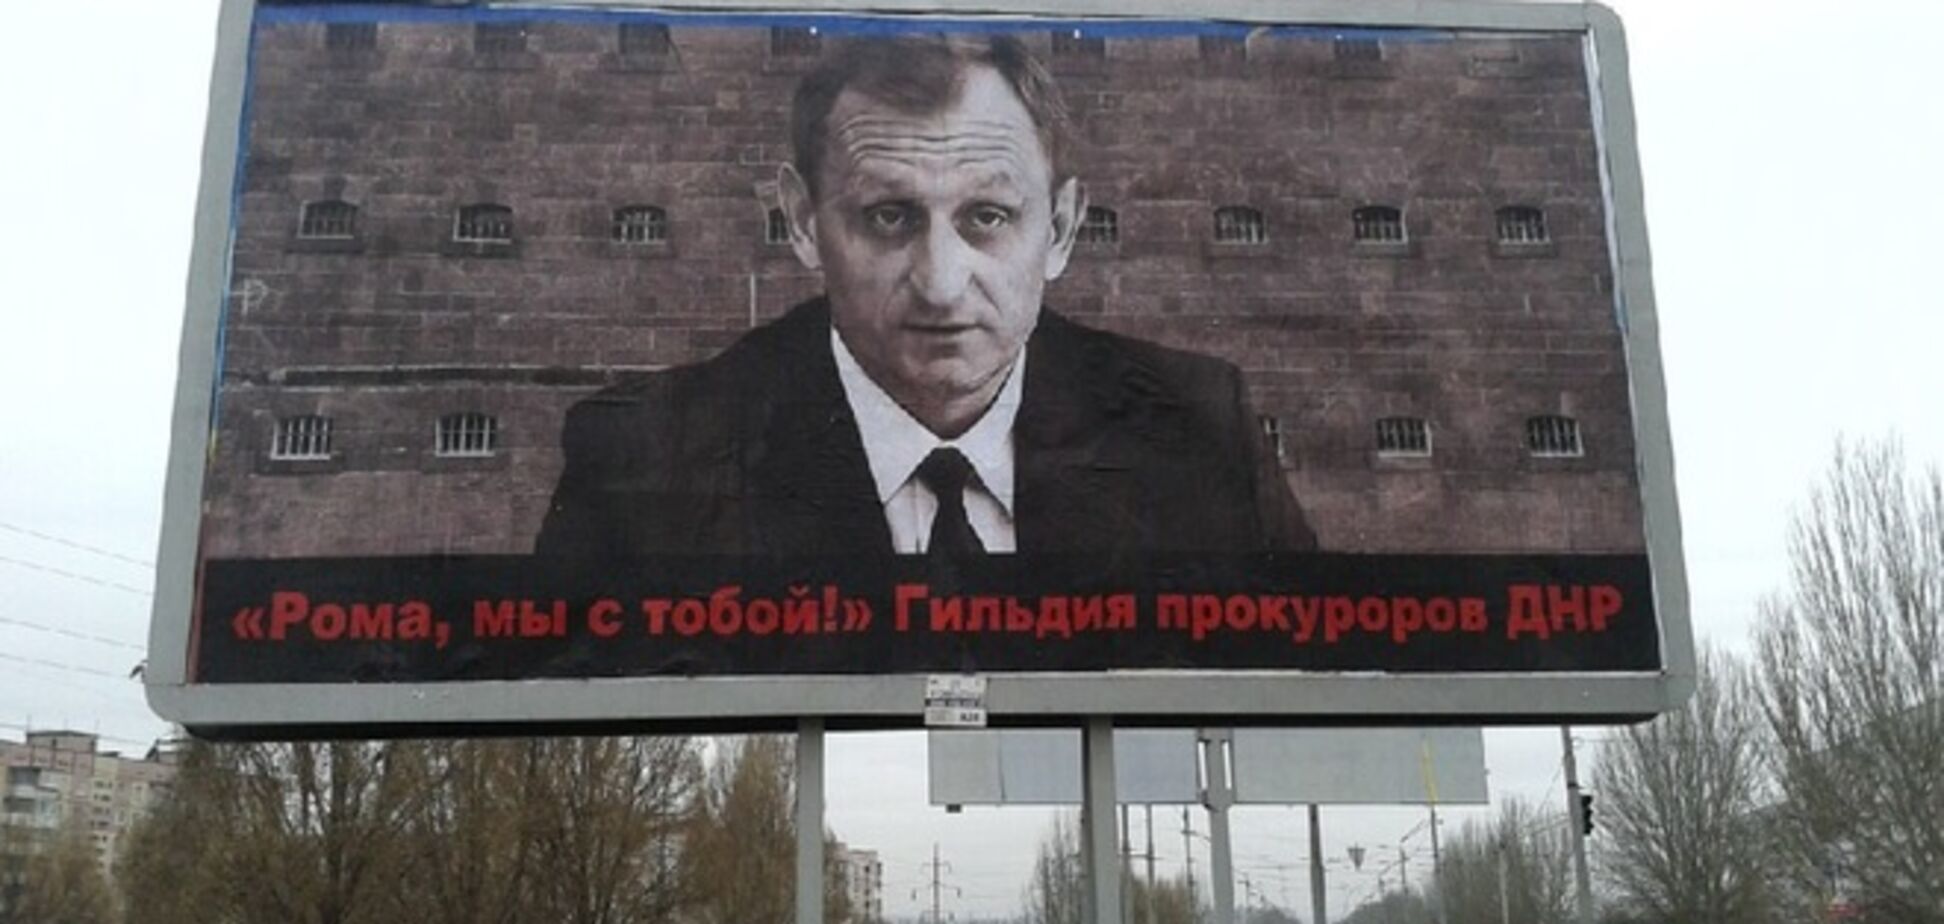 В Днепроперовске появились билборды со скандальным прокурором и подписью 'ДНР': опубликованы фото